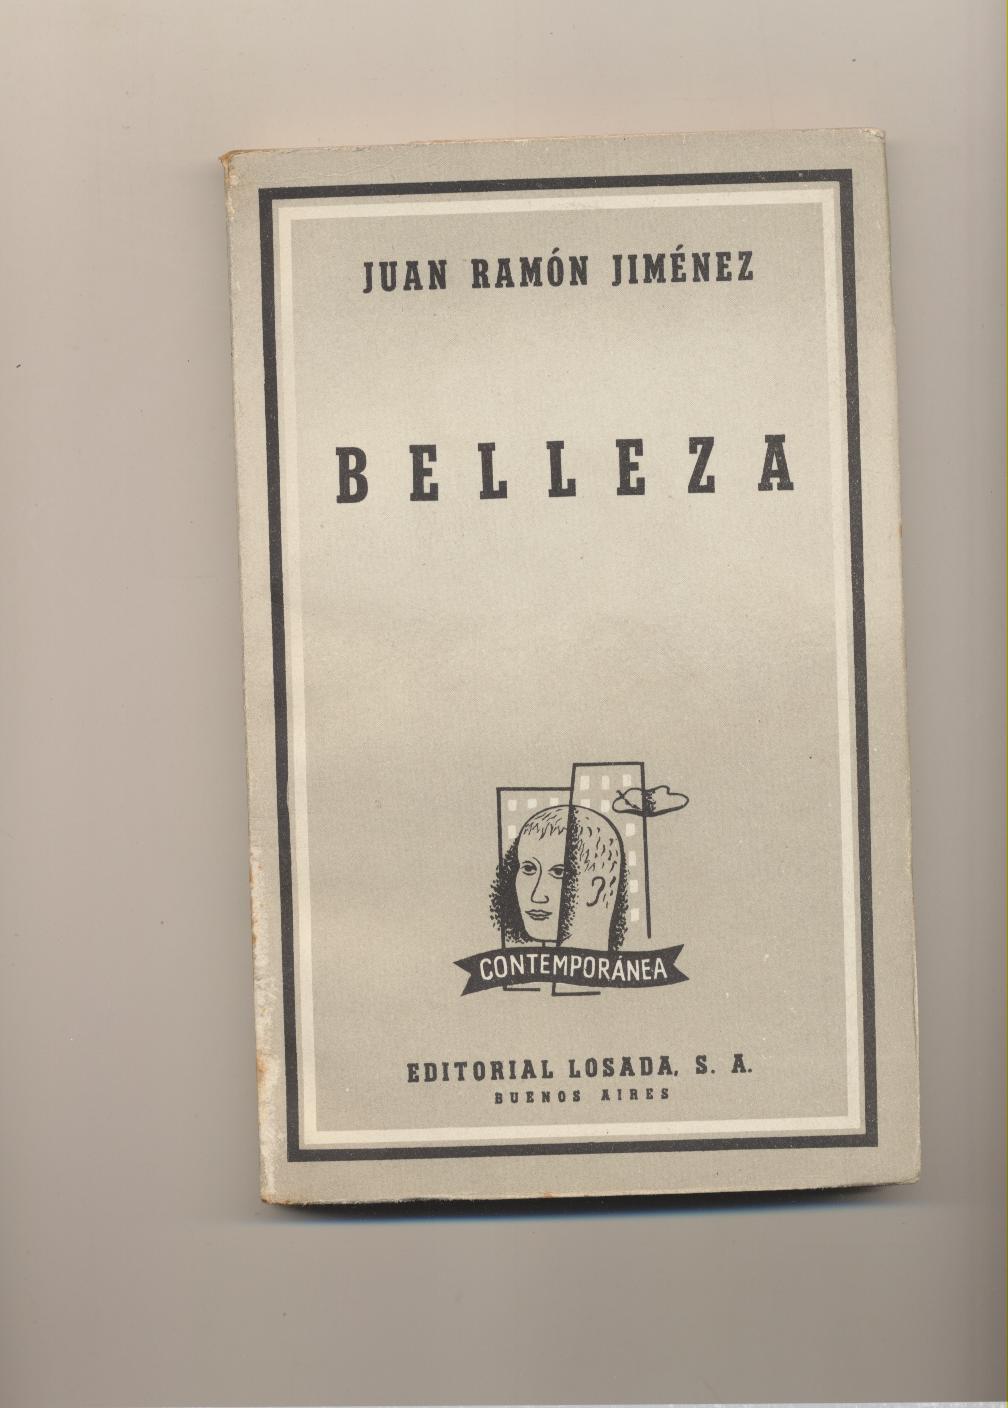 Juan Ramon Jiménez. Belleza. 2ª Edición Editorial Losada-Buenos Aires 1959